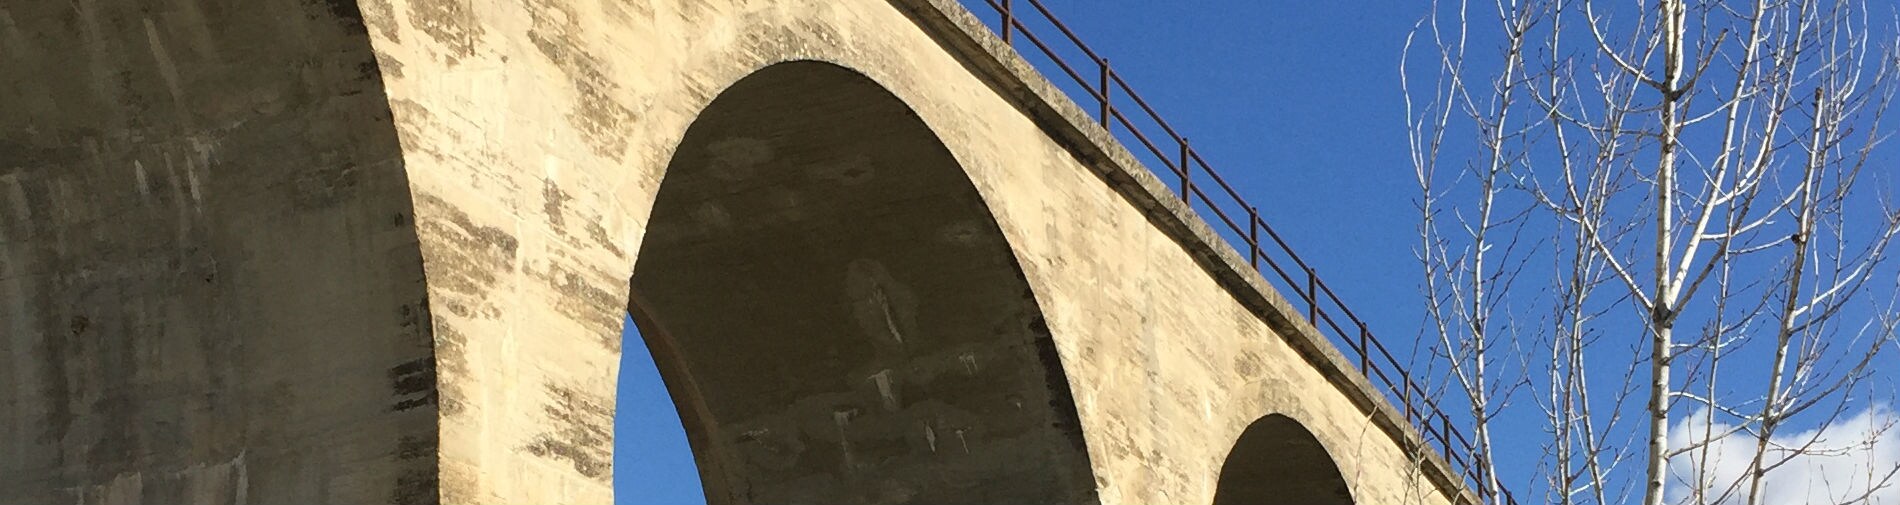 Viaducto construido en Villanueva del Arzobispo en el marco de la línea Baeza-Utiel.